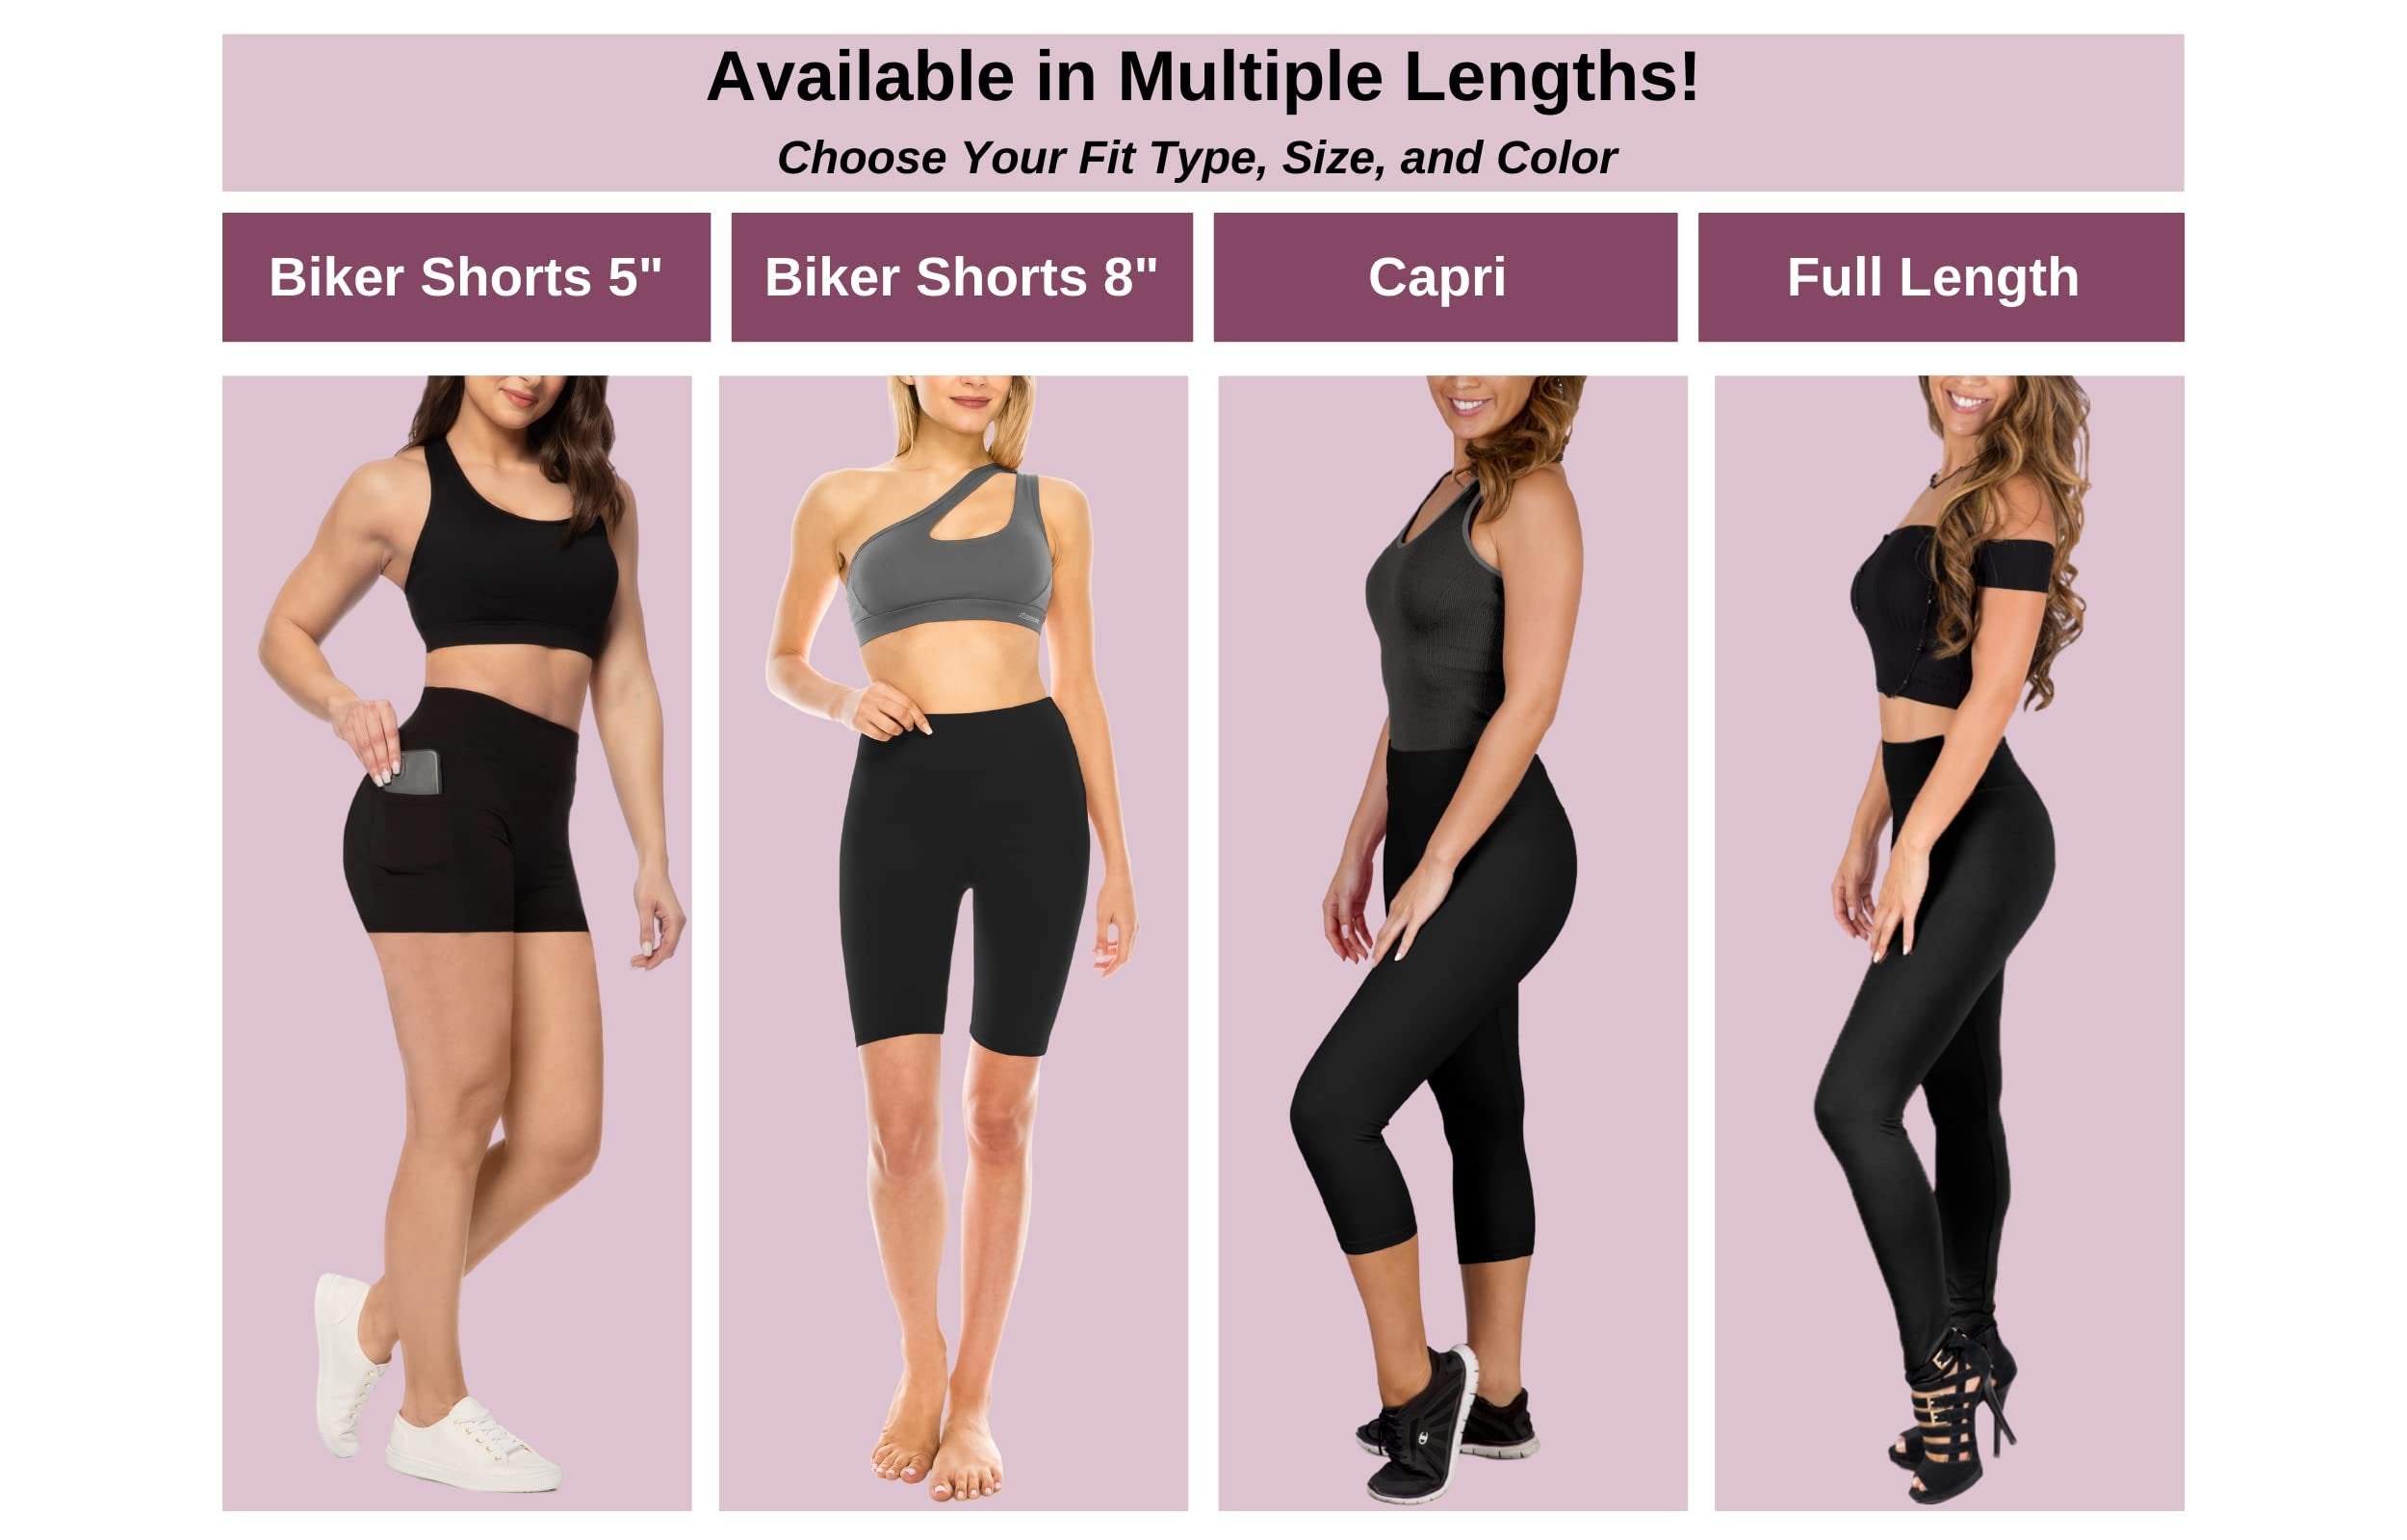 SATINA High Waisted Capri Leggings for Women - Capri Leggings for Women - High Waist for Tummy Control - Navy Capri Leggings for |3 Inch Waistband (One Size, Navy)